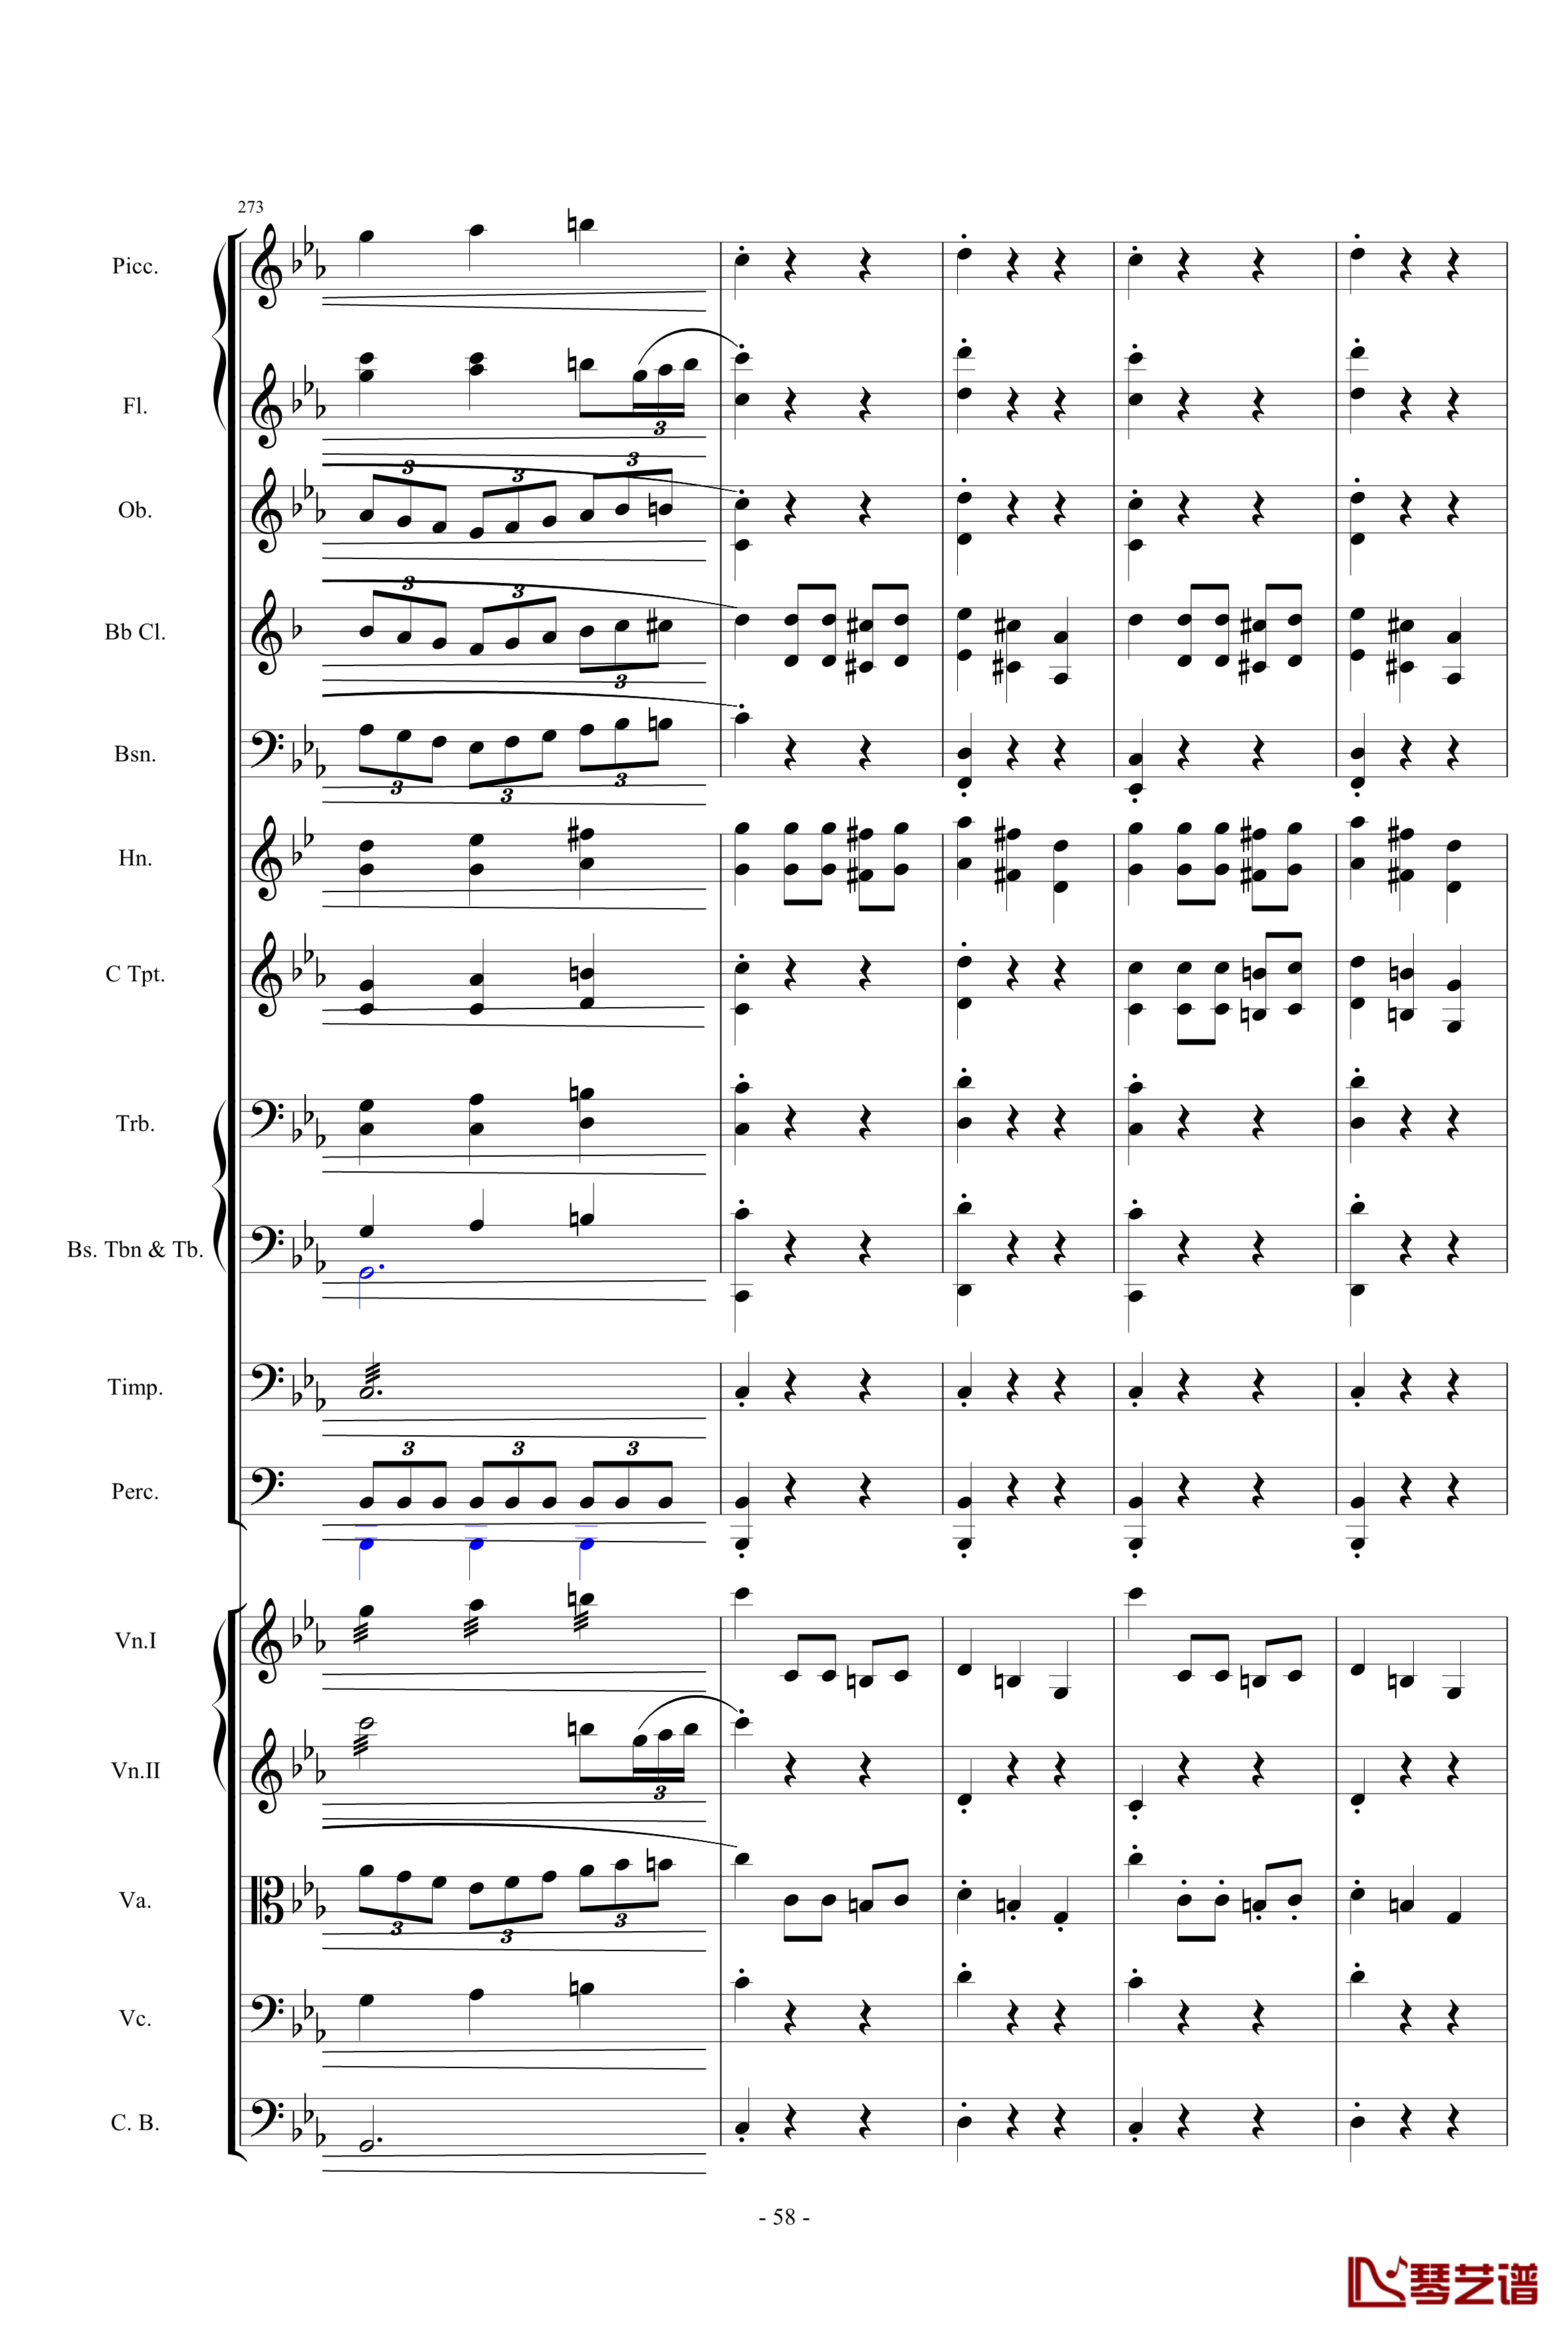 愤怒的小鸟交响曲第三乐章Op.5 no.3钢琴谱-1057257858